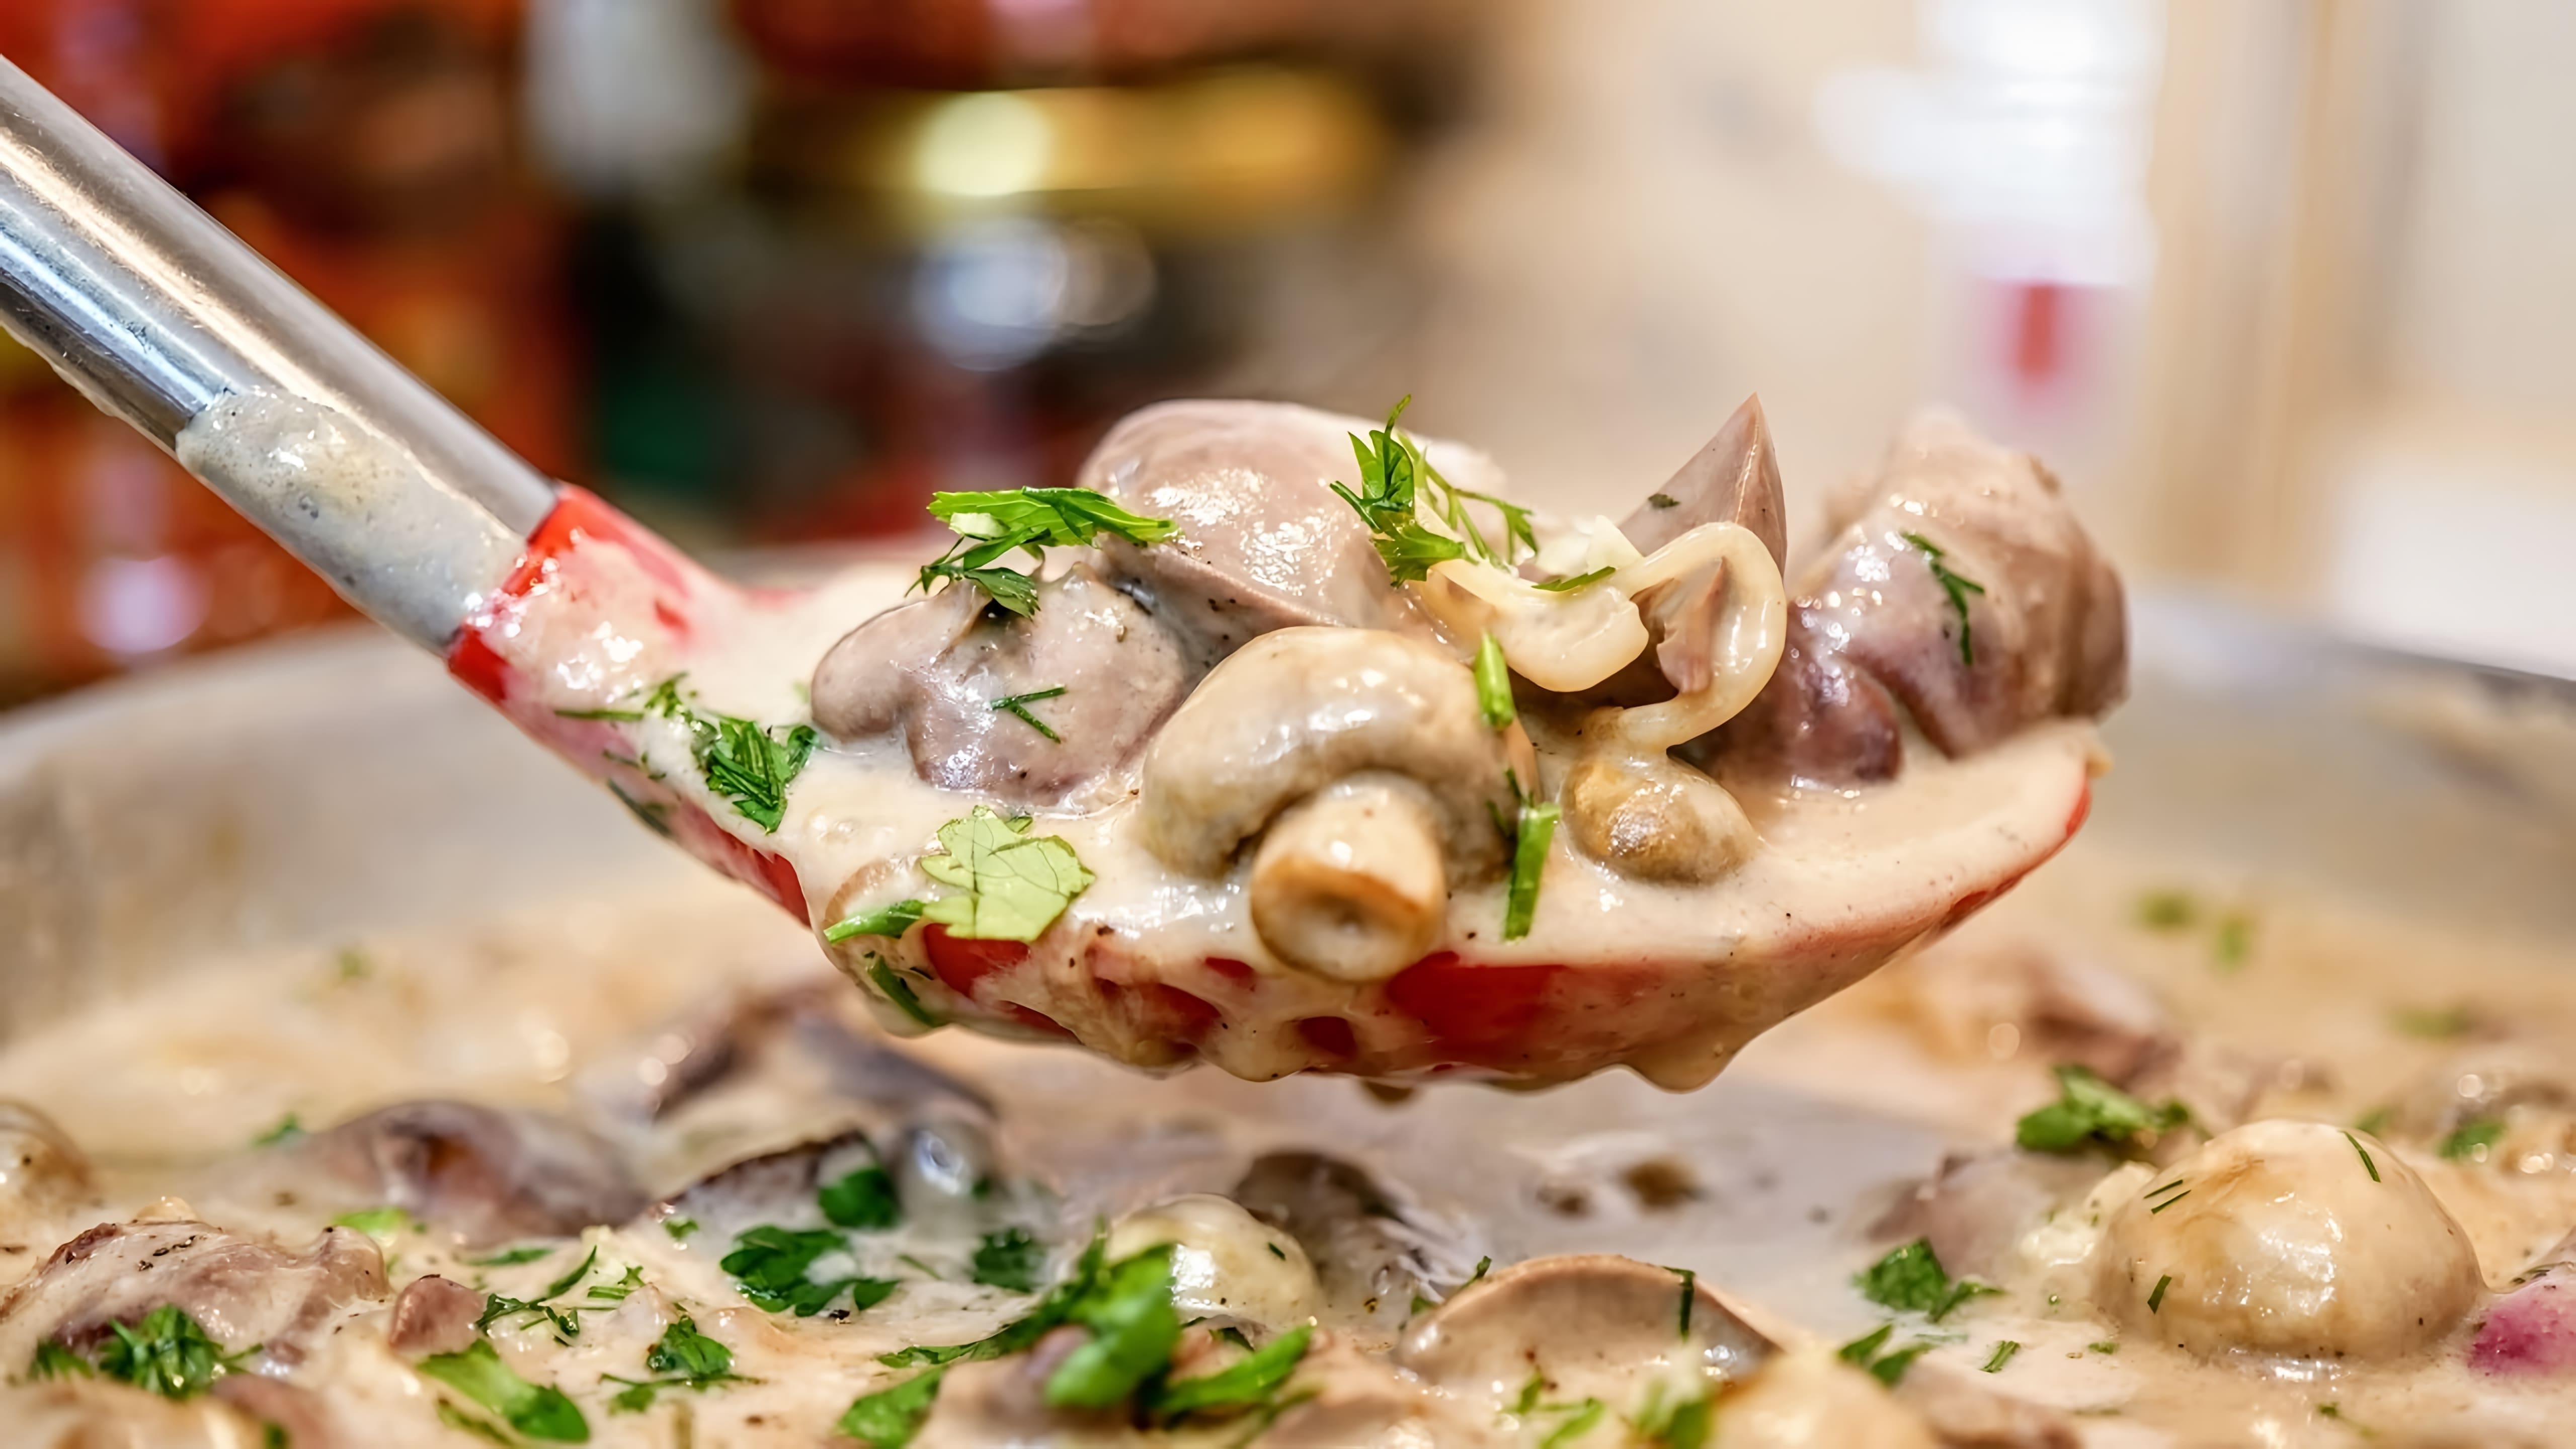 В этом видео демонстрируется рецепт приготовления вкусного обеда - куриной печени с грибами в сырном соусе